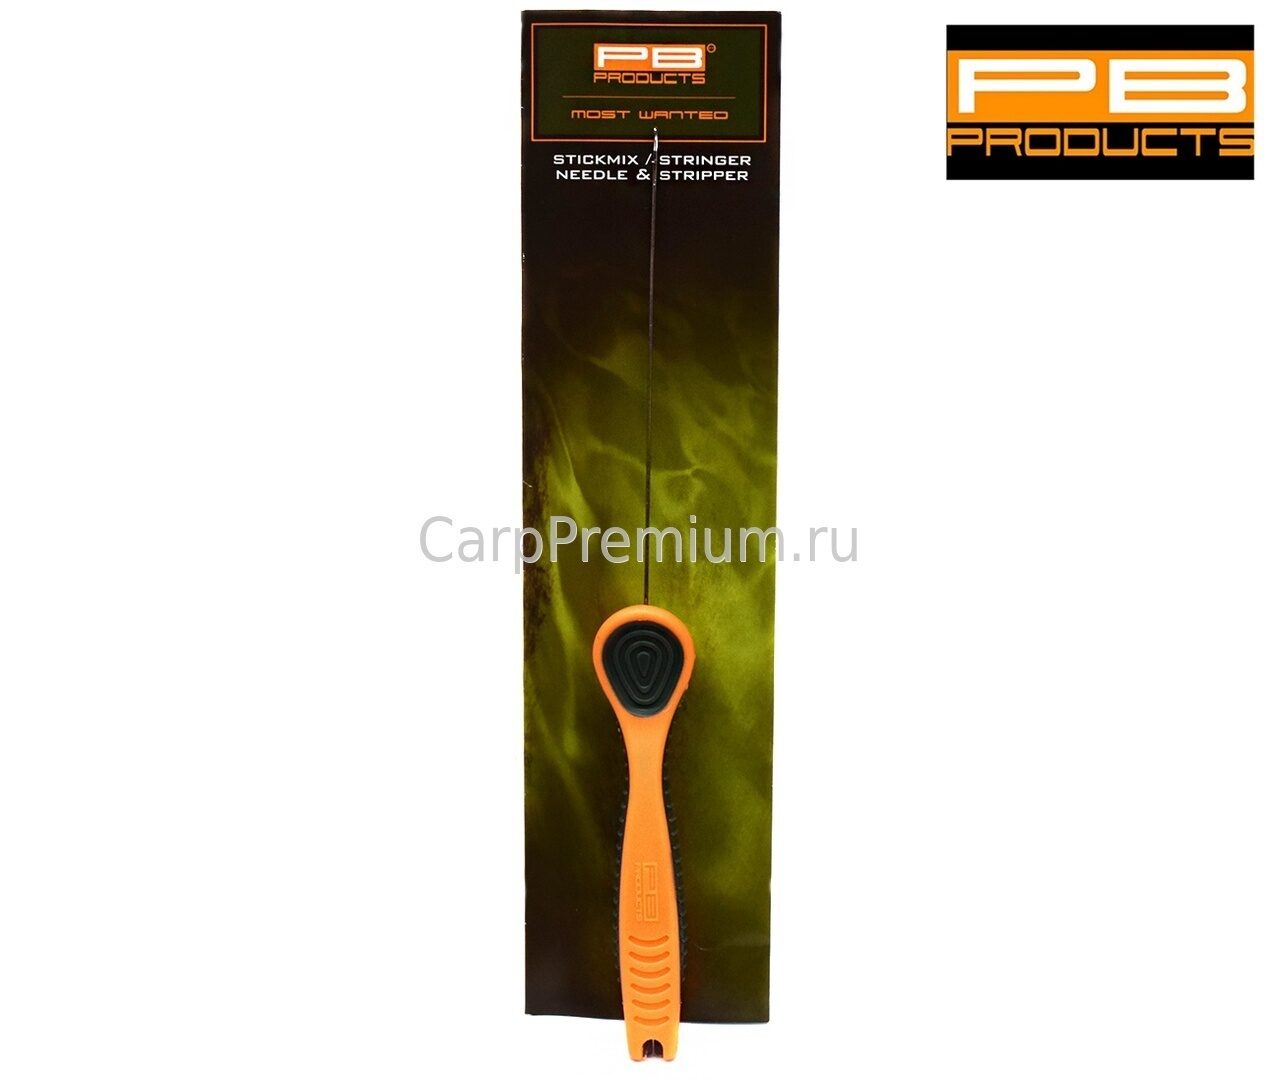 Игла удлиненная для ПВА-систем + инструмент для снятия оболочки PB Products - Stickmix-Stringer Needle & Stripper